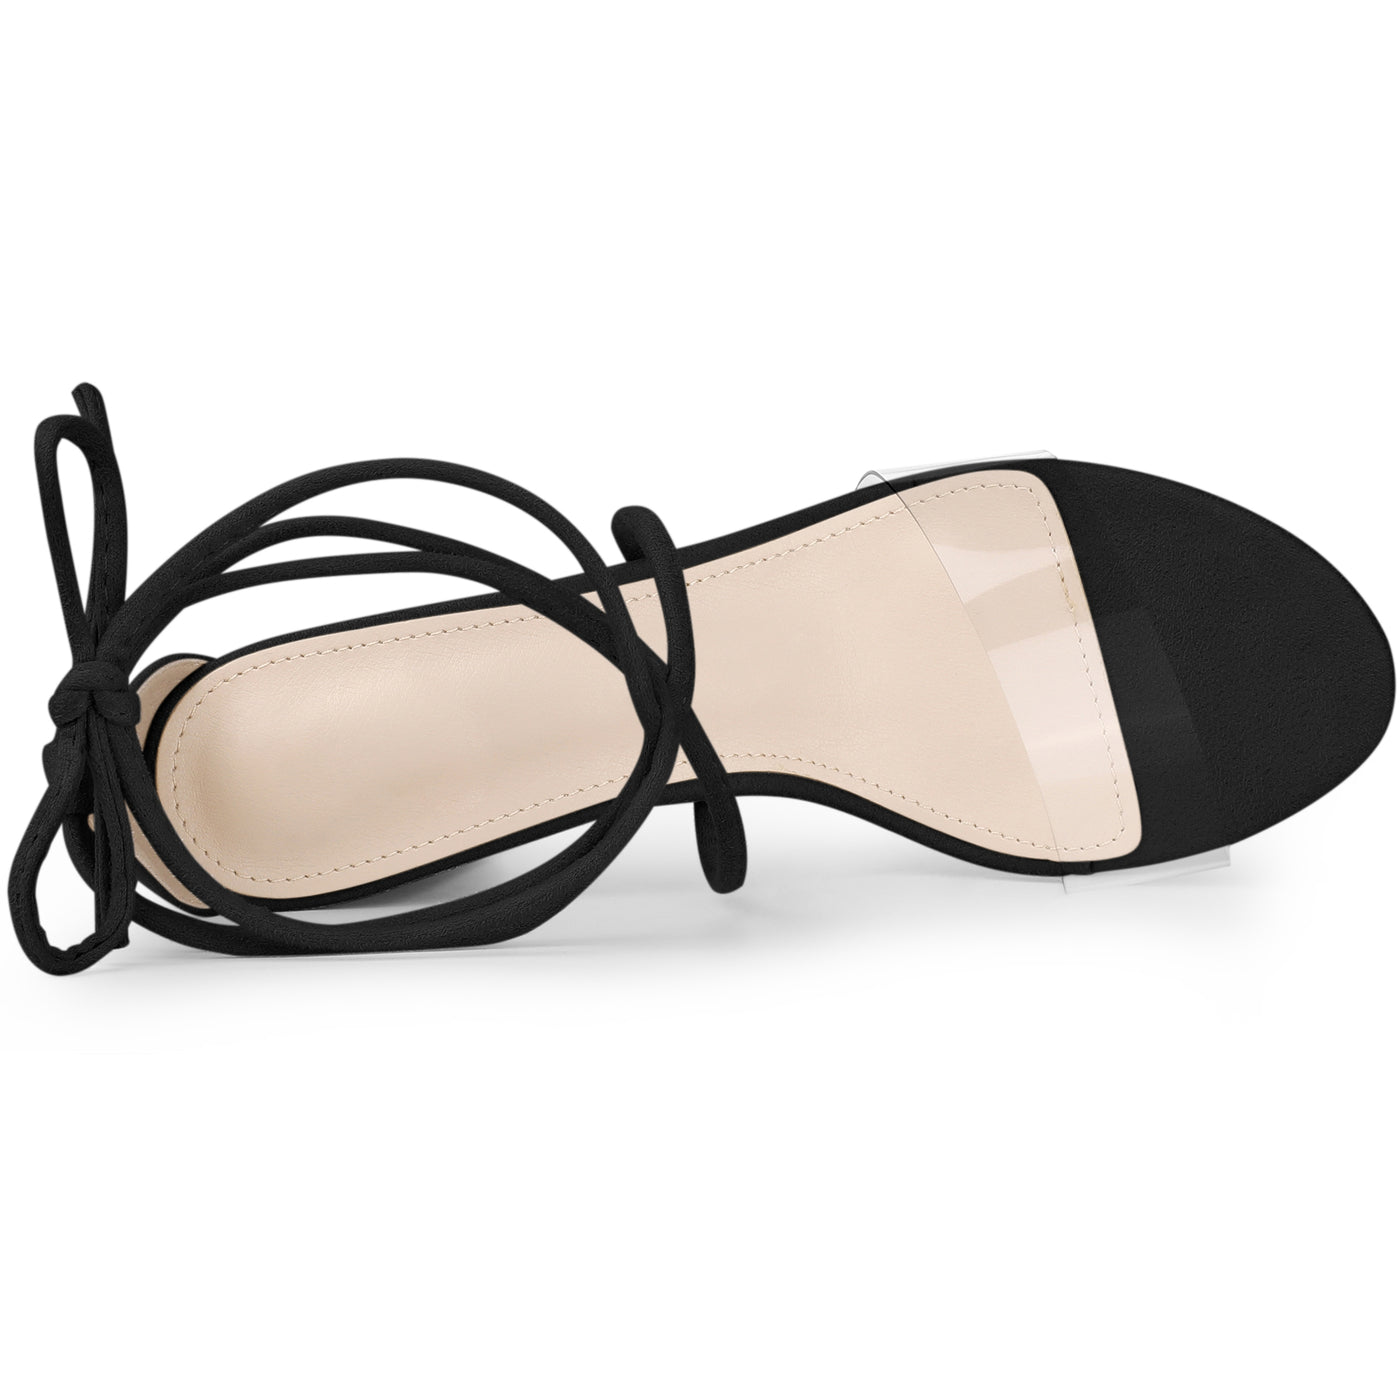 Bublédon Lace Up Clear Strap Block Heels Sandals